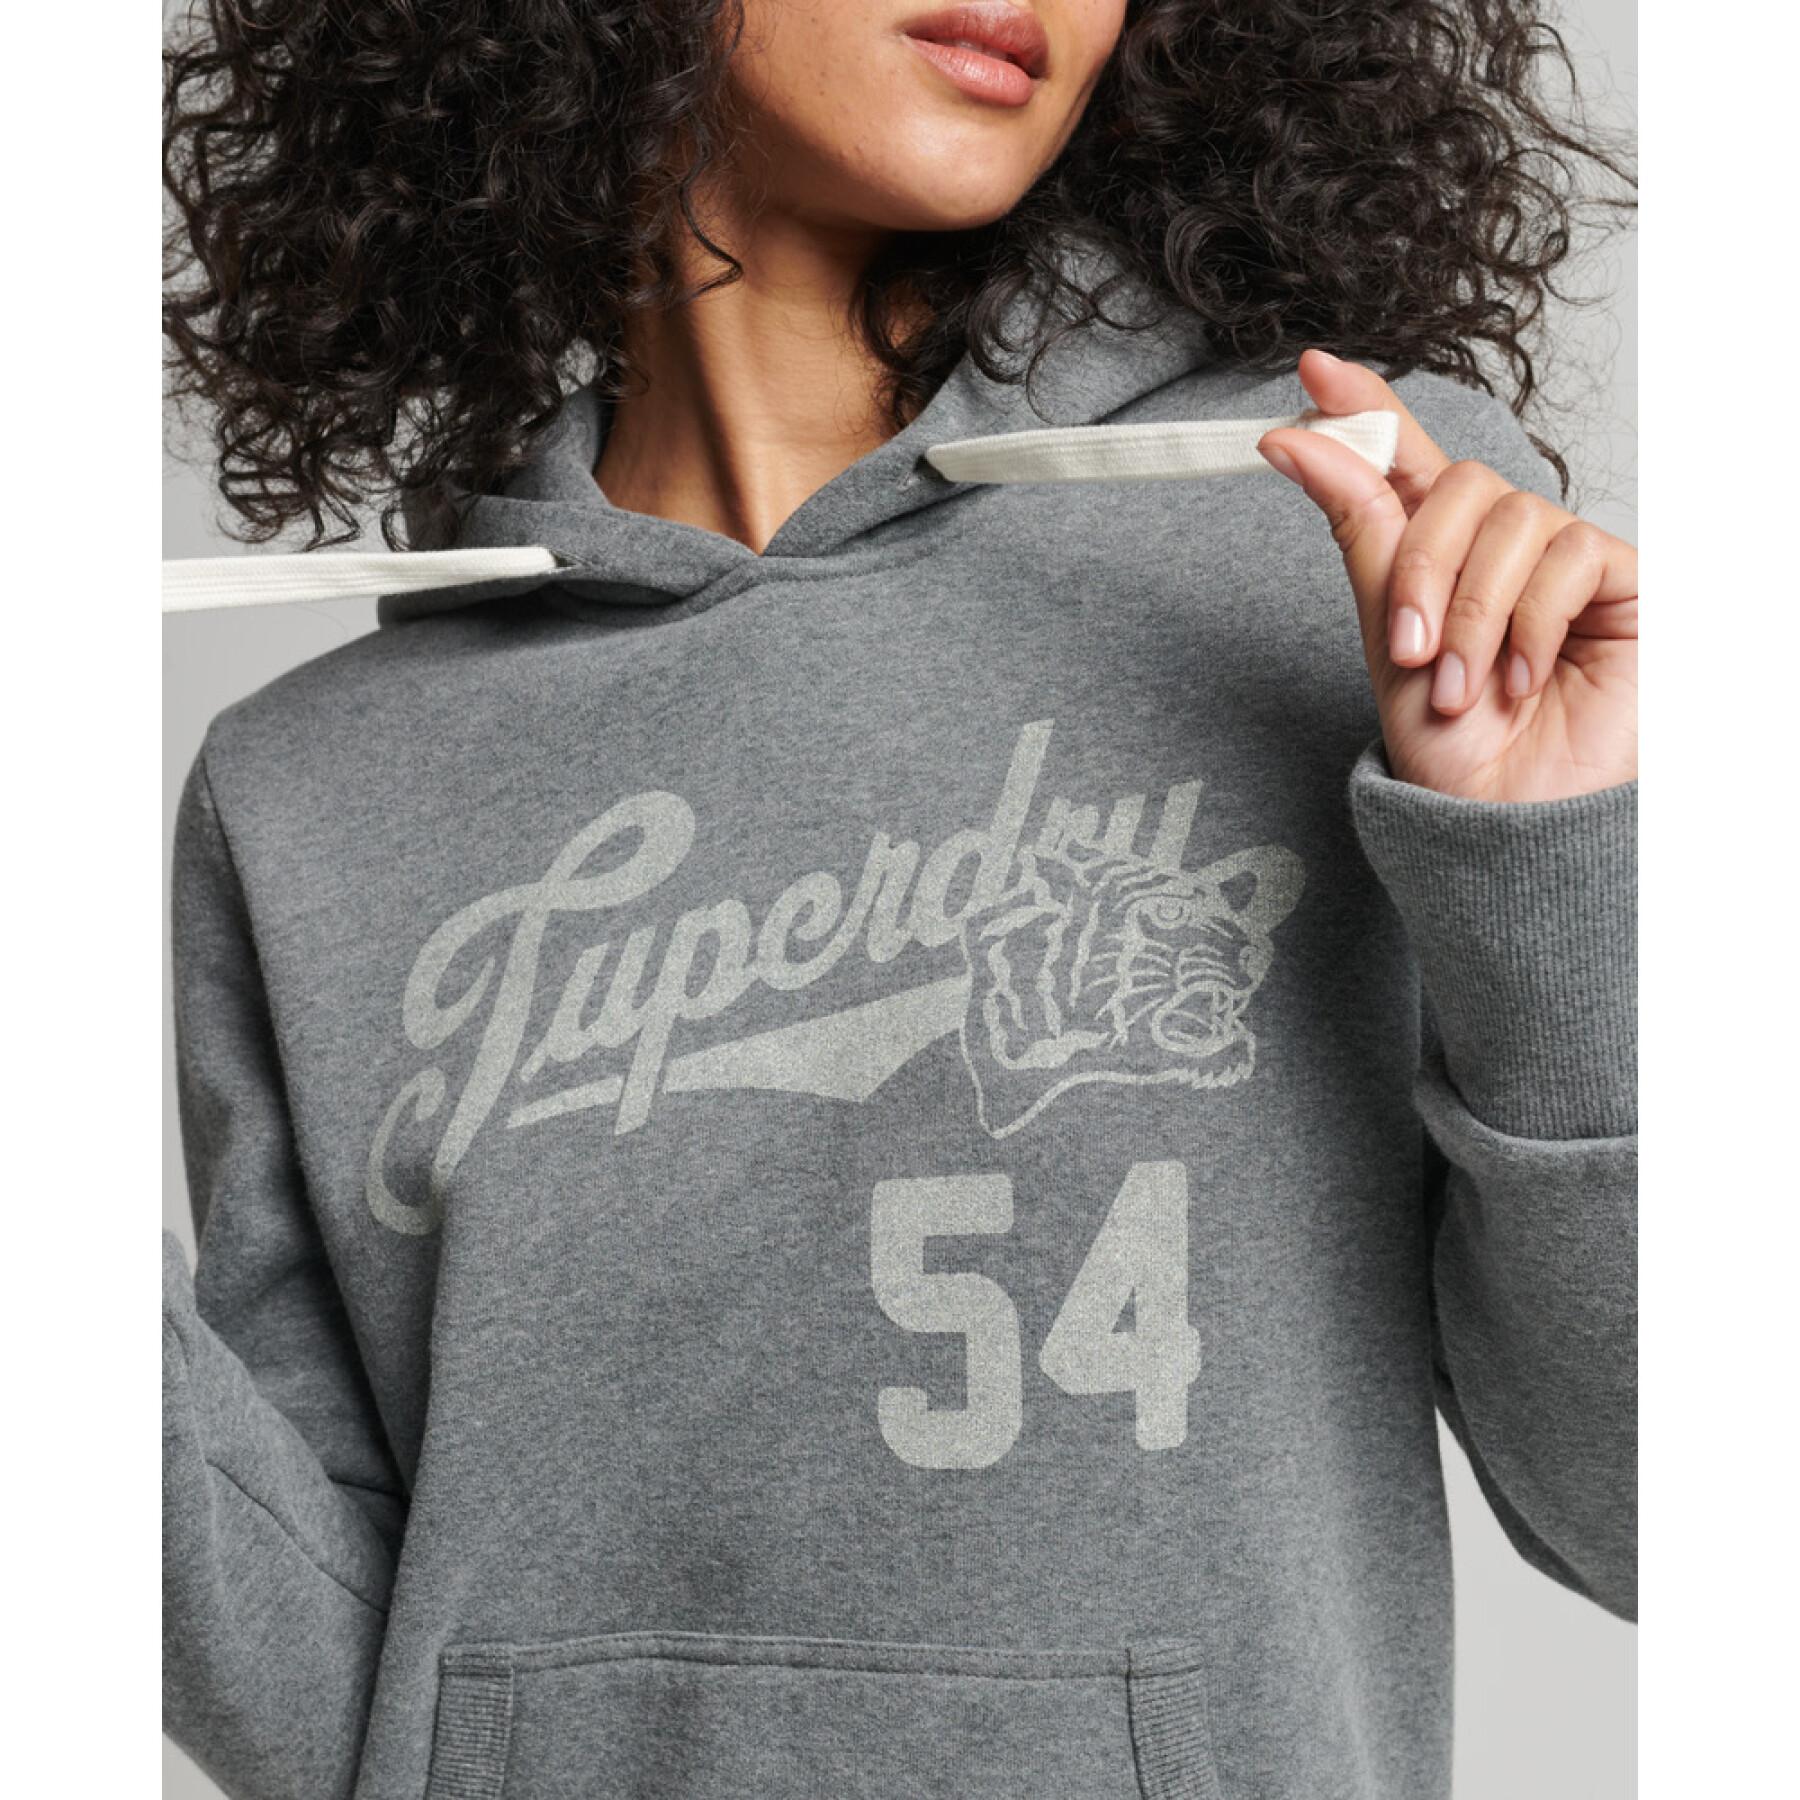 Women's hooded sweatshirt Superdry Script Vintage Style